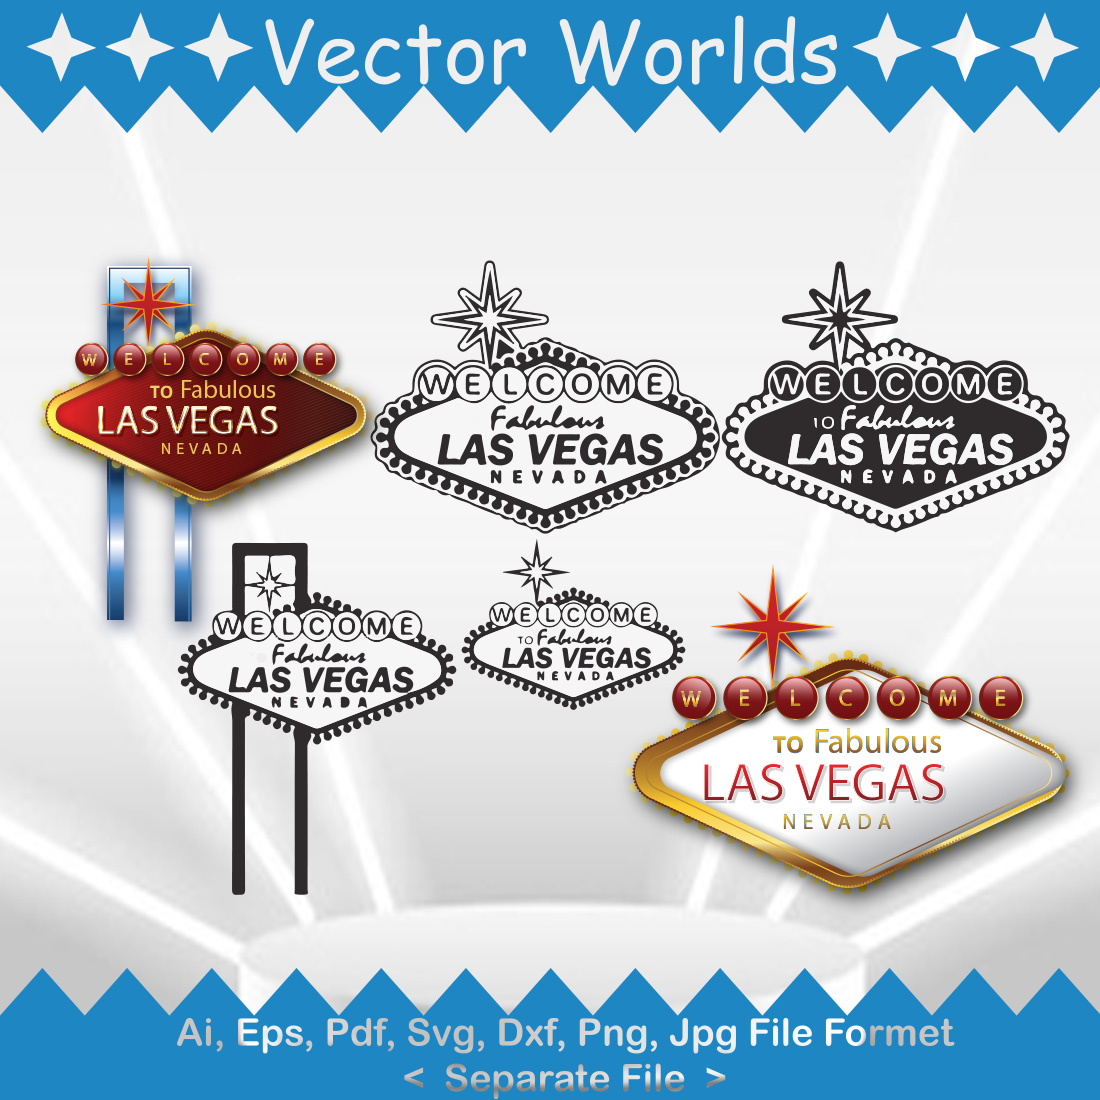 Las Vegas SVG Vector Design preview image.